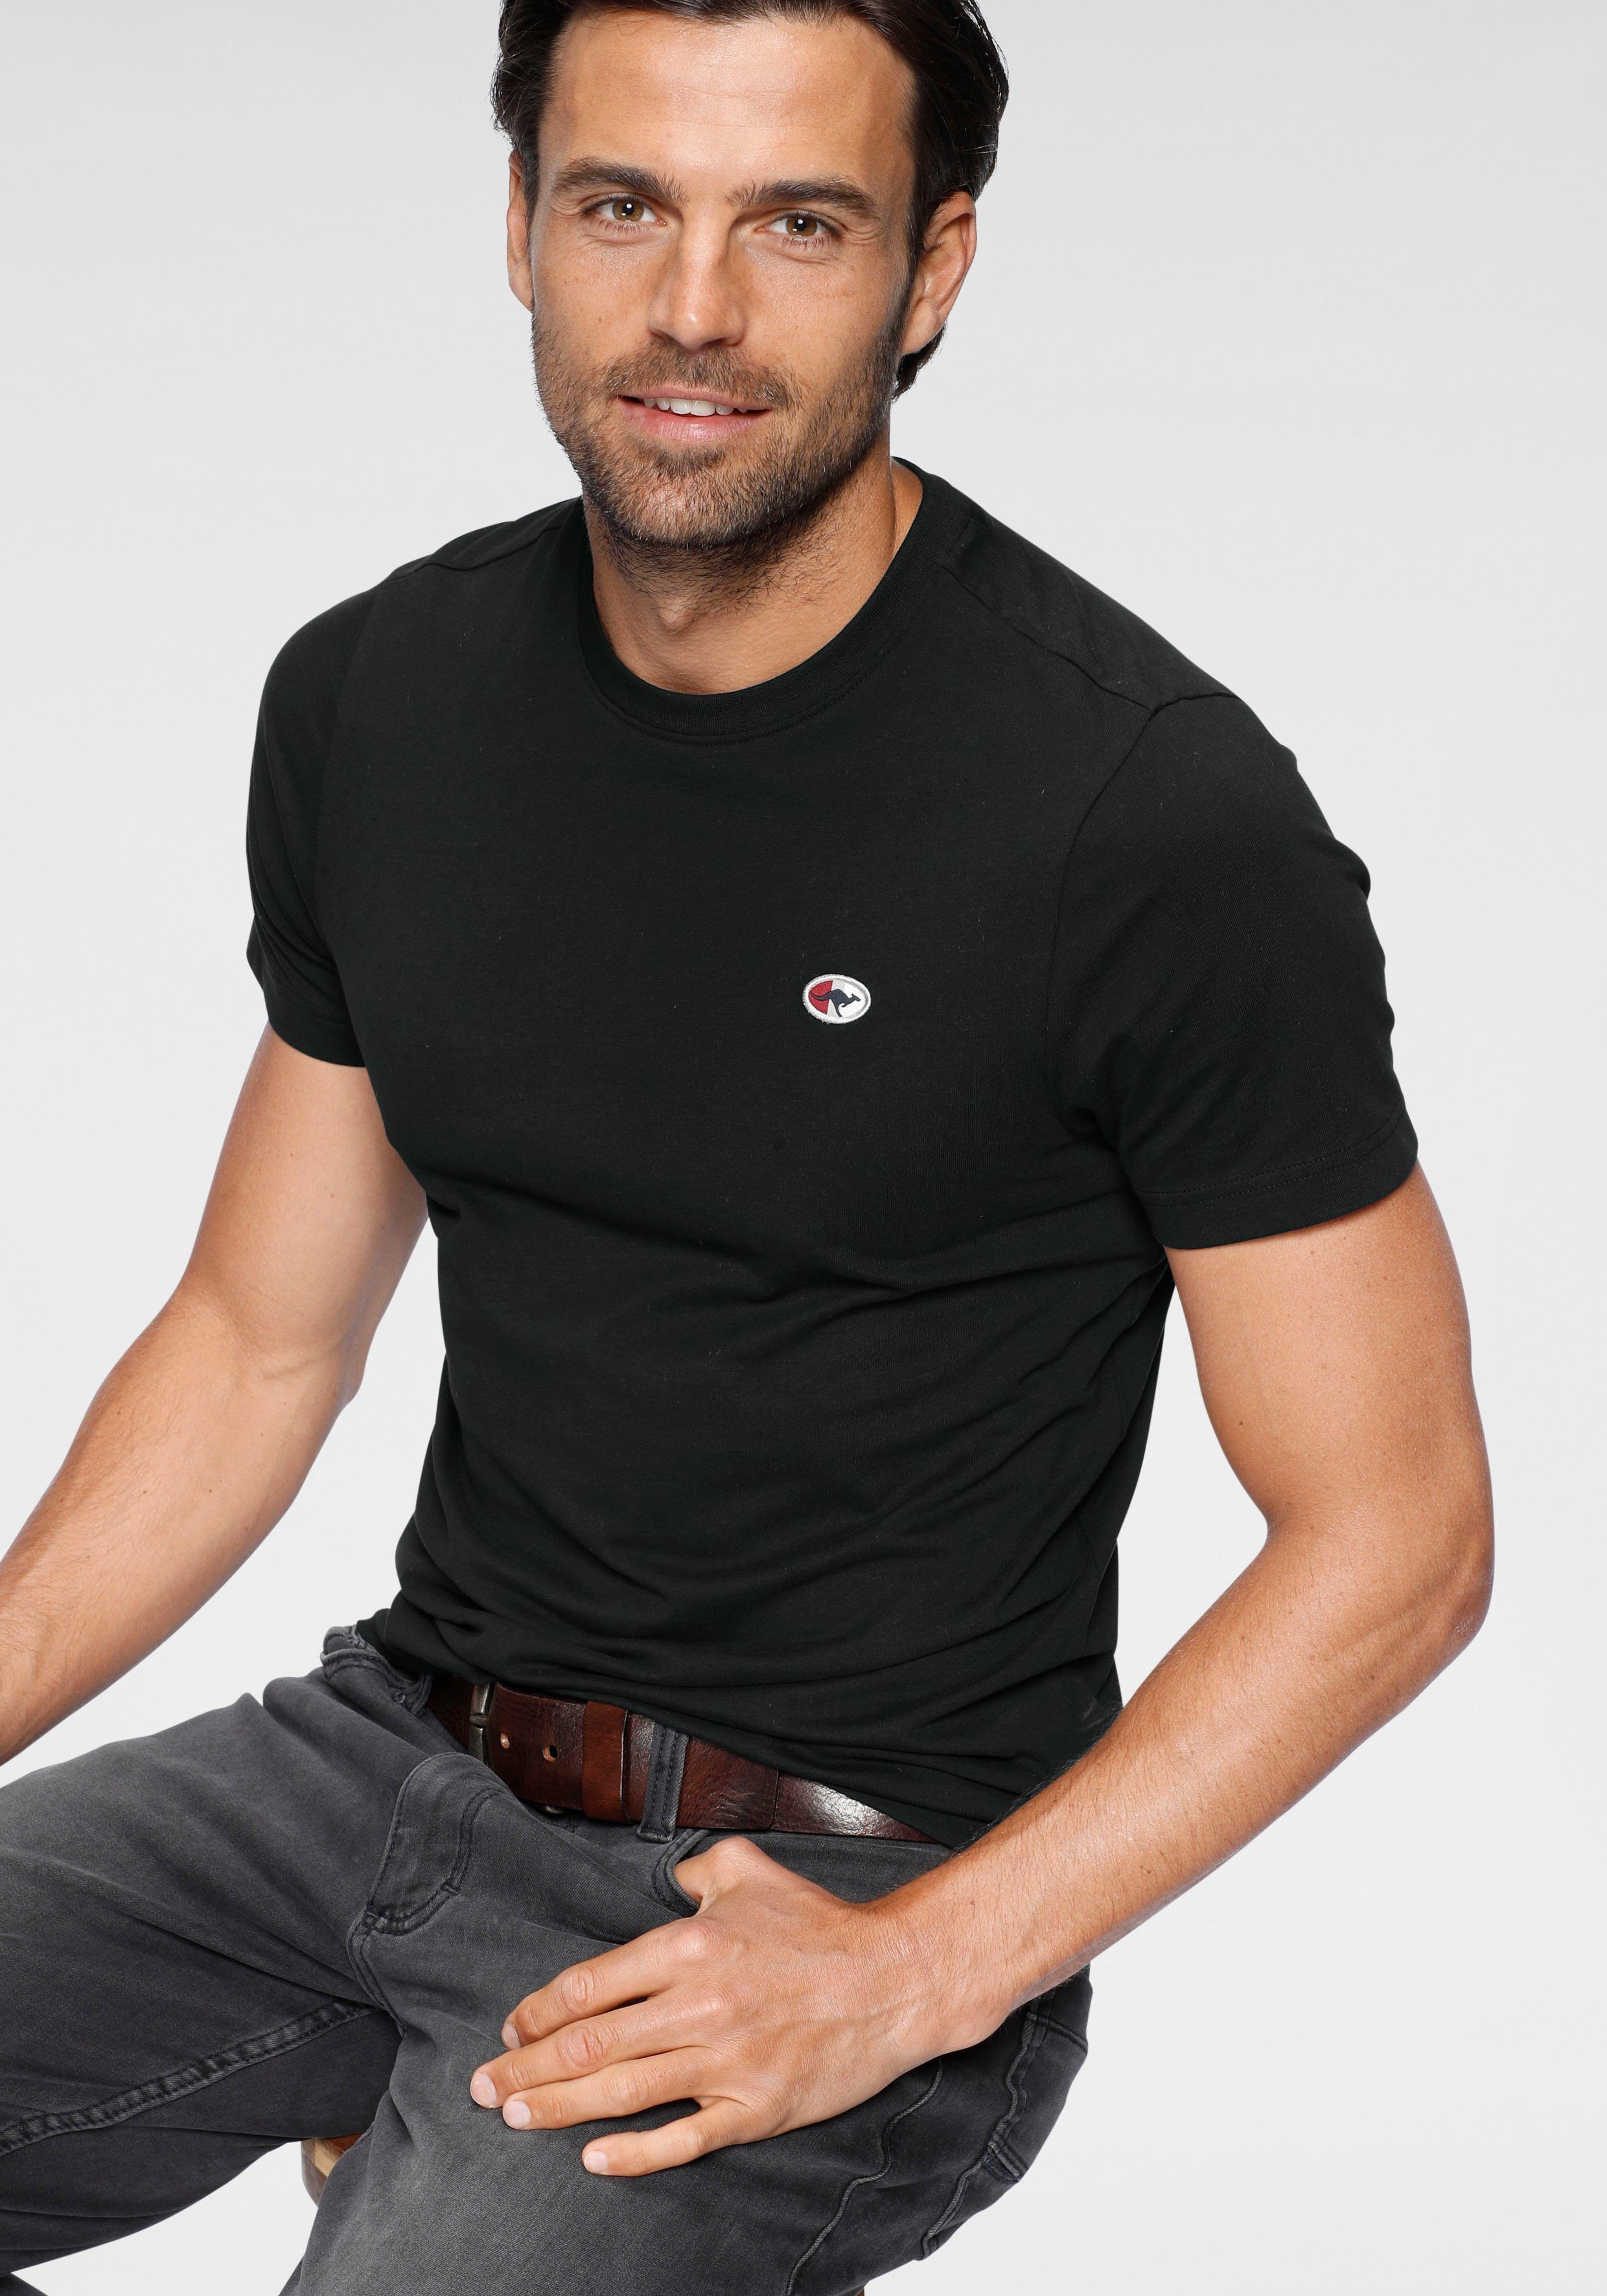 KangaROOS T-Shirt unifarben schwarz